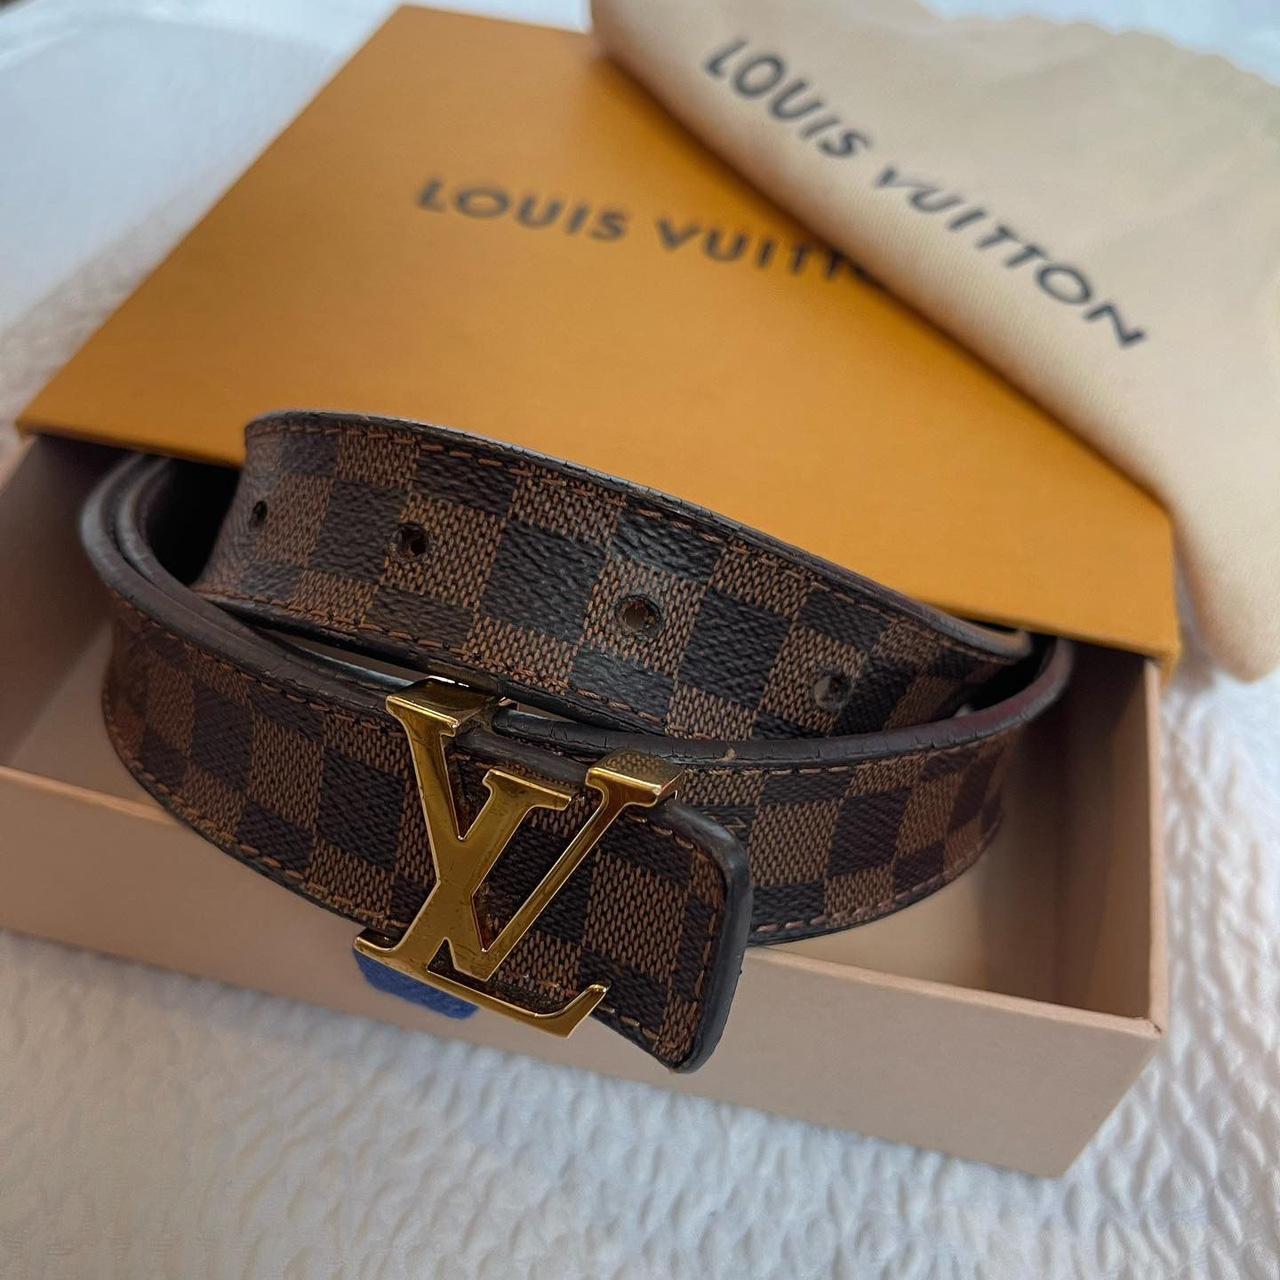 Authentic Louis Vuitton Initiales 40MM - Depop